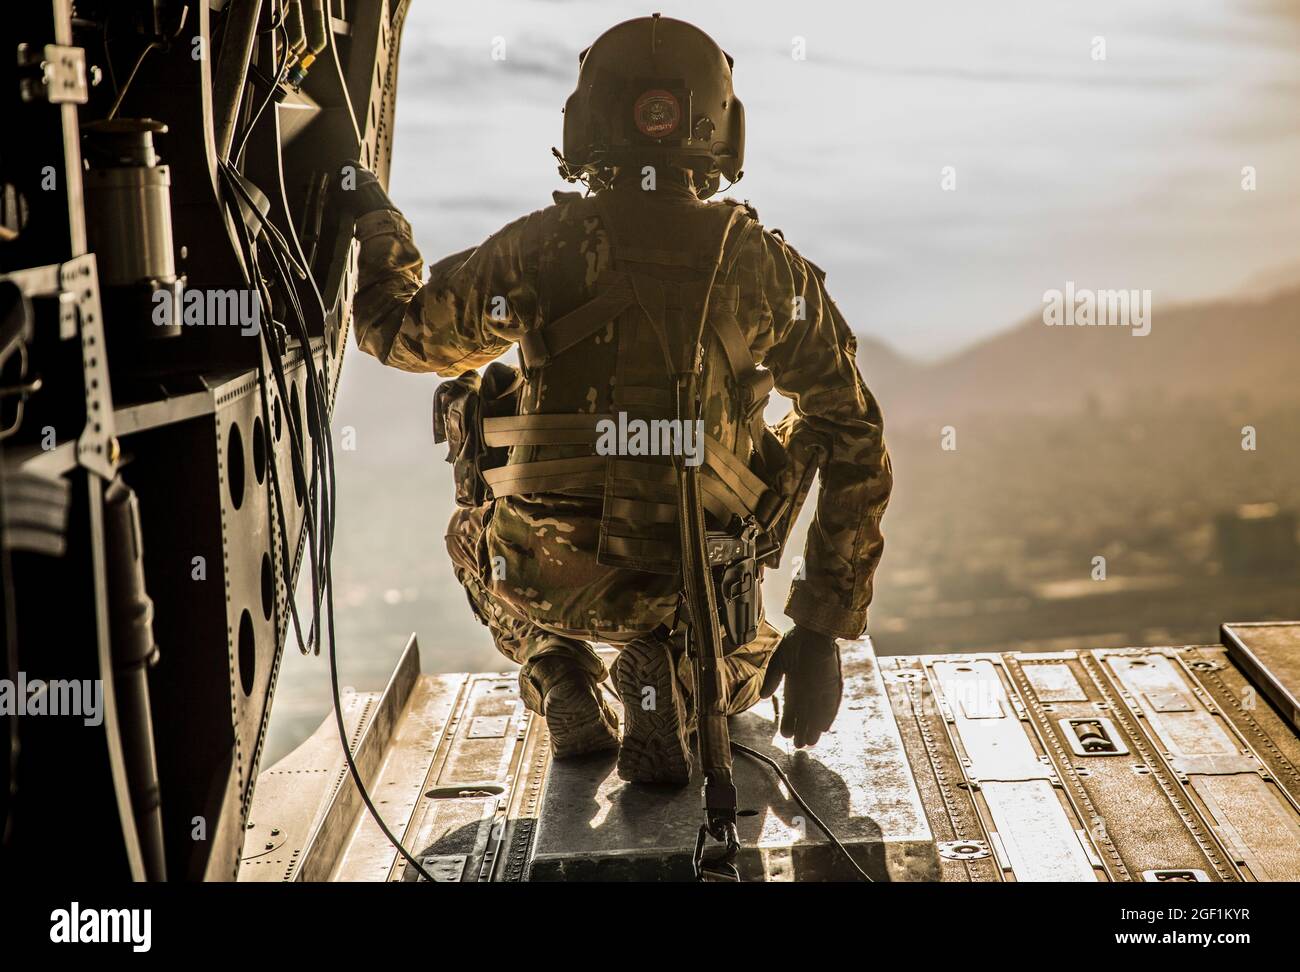 Un soldato degli Stati Uniti assegnato alla X Divisione montagna indagini la parte posteriore di un CH-47 Chinook durante il volo sopra Kabul, Afghanistan, 30 novembre 2019. (STATI UNITI Foto della riserva dell'esercito da SPC. Jeffery J. Harris/ rilasciato) Foto Stock